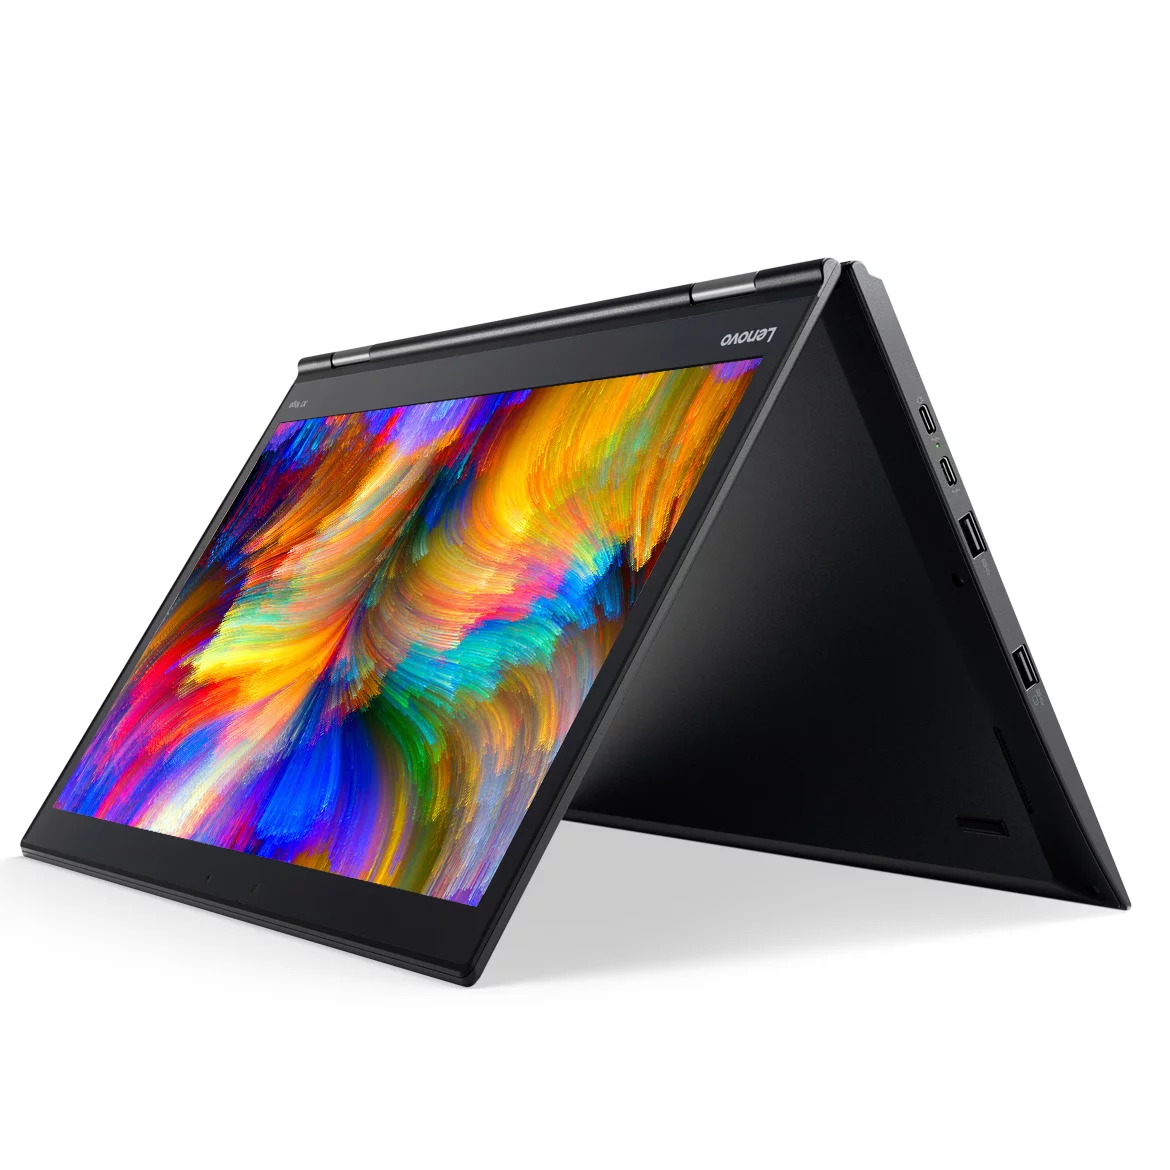 Notebook Lenovo Yoga 520 2 em 1 Tela 14 Touchscreen, Intel i5